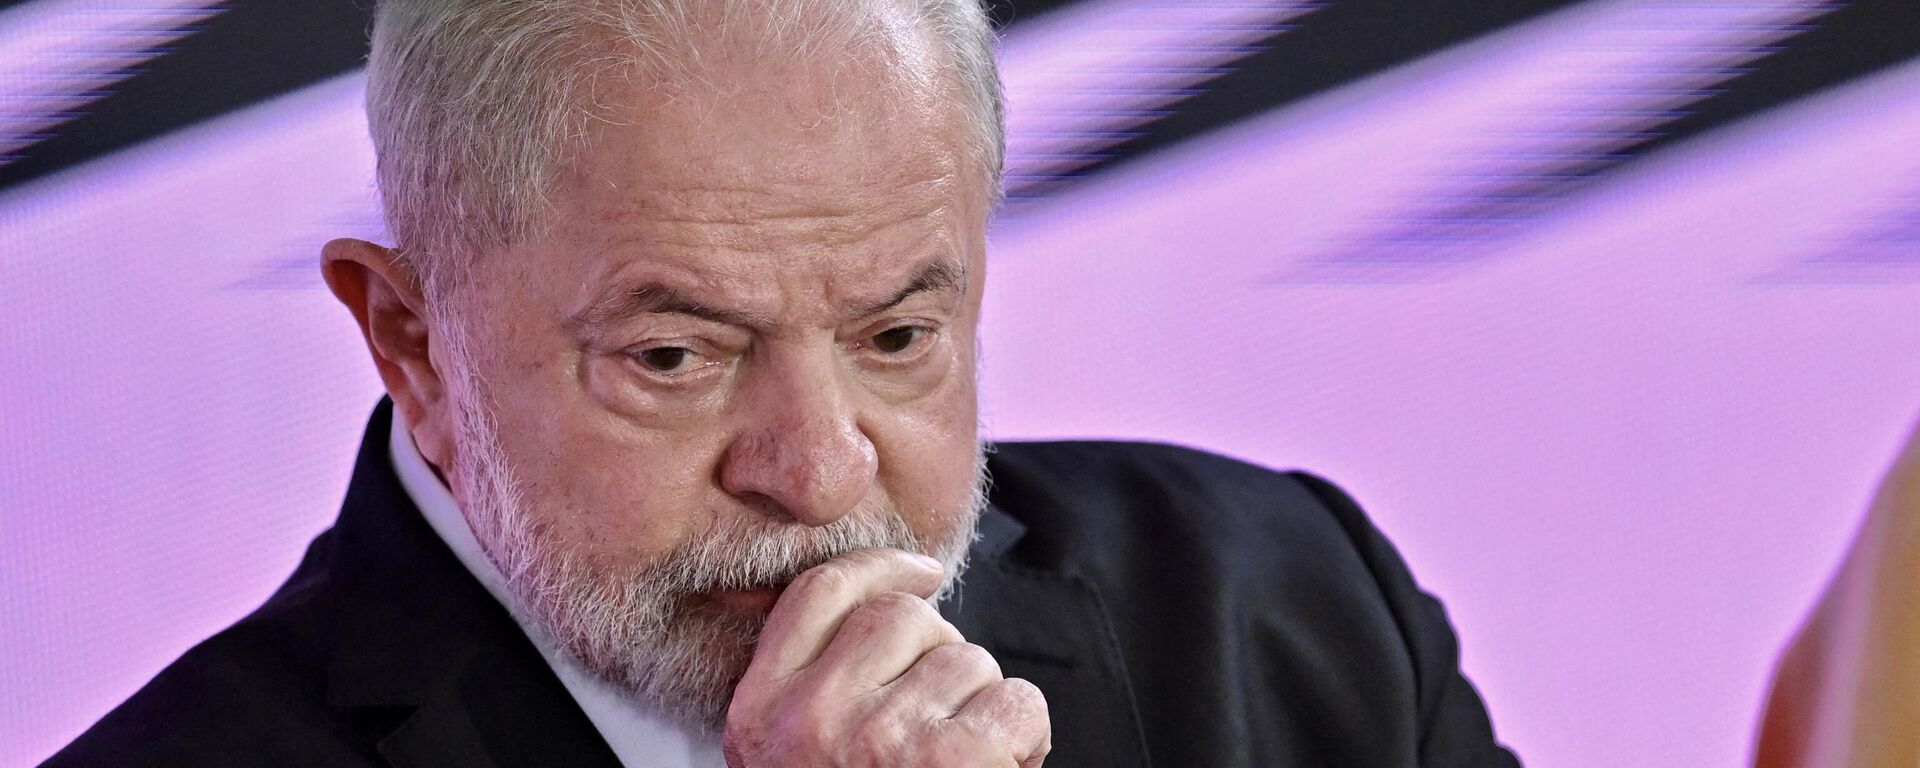 O presidente brasileiro Luiz Inácio Lula da Silva escuta durante o lançamento do novo plano Bolsa Família, que inclui um novo programa de renda mínima para famílias pobres, no Palácio do Planalto, em 2 de março de 2023 - Sputnik Brasil, 1920, 31.03.2023